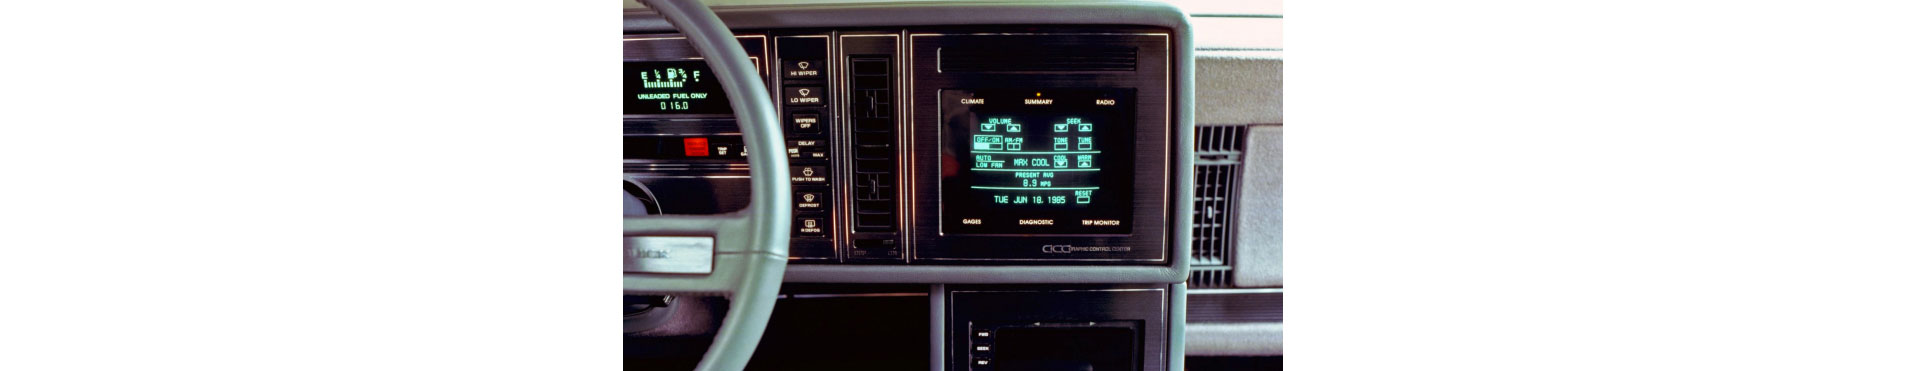 1986: První dotyková obrazovka